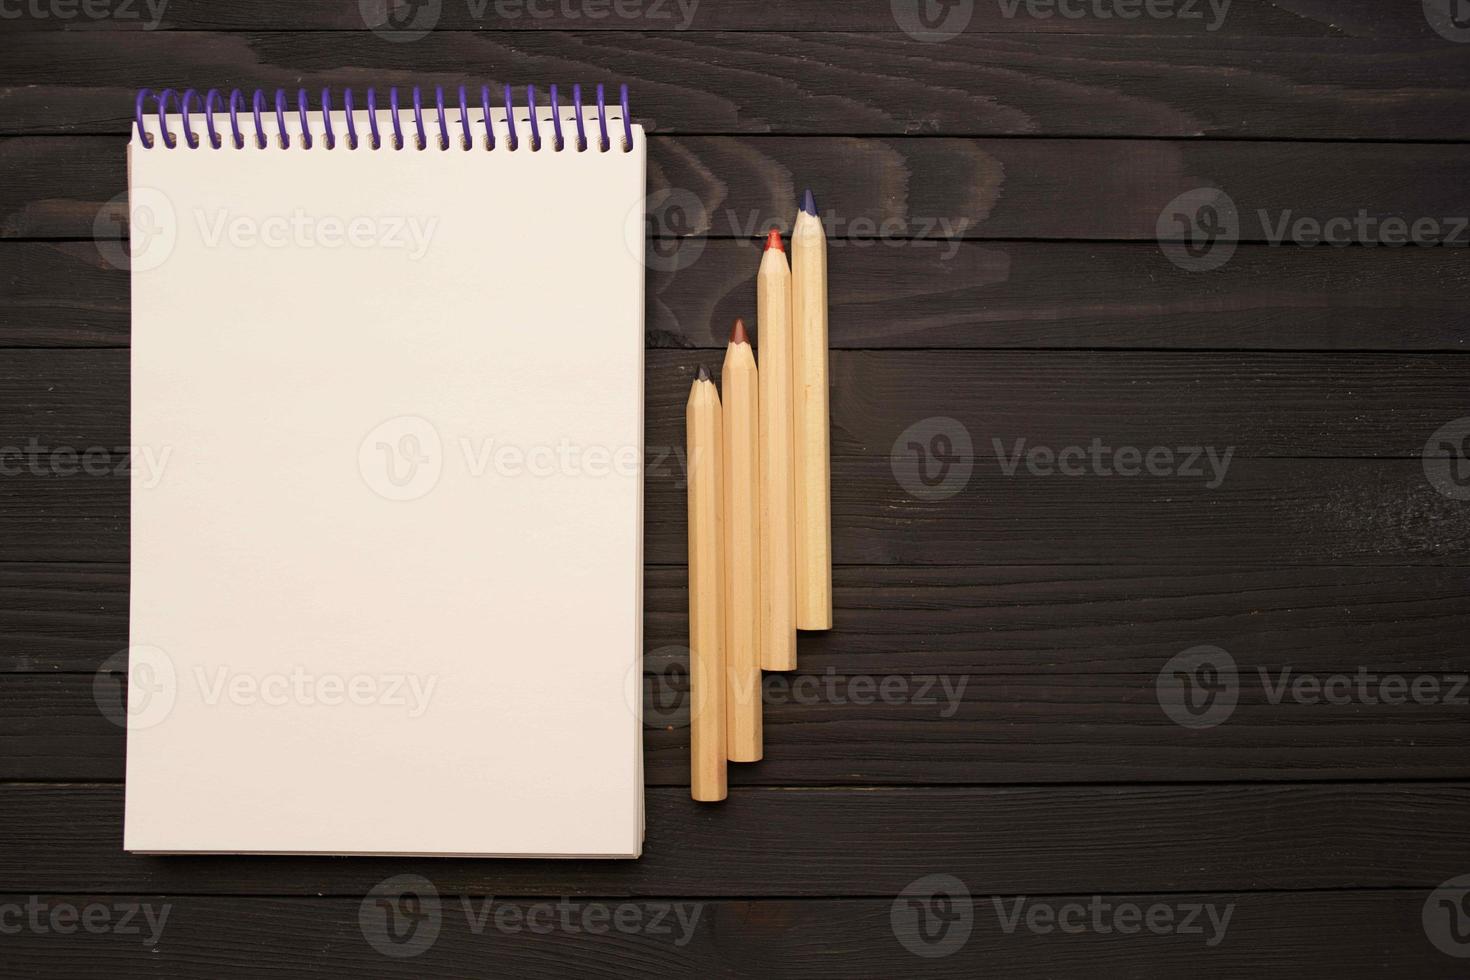 anteckningsbok pennor trä- tabell verktyg för artister foto